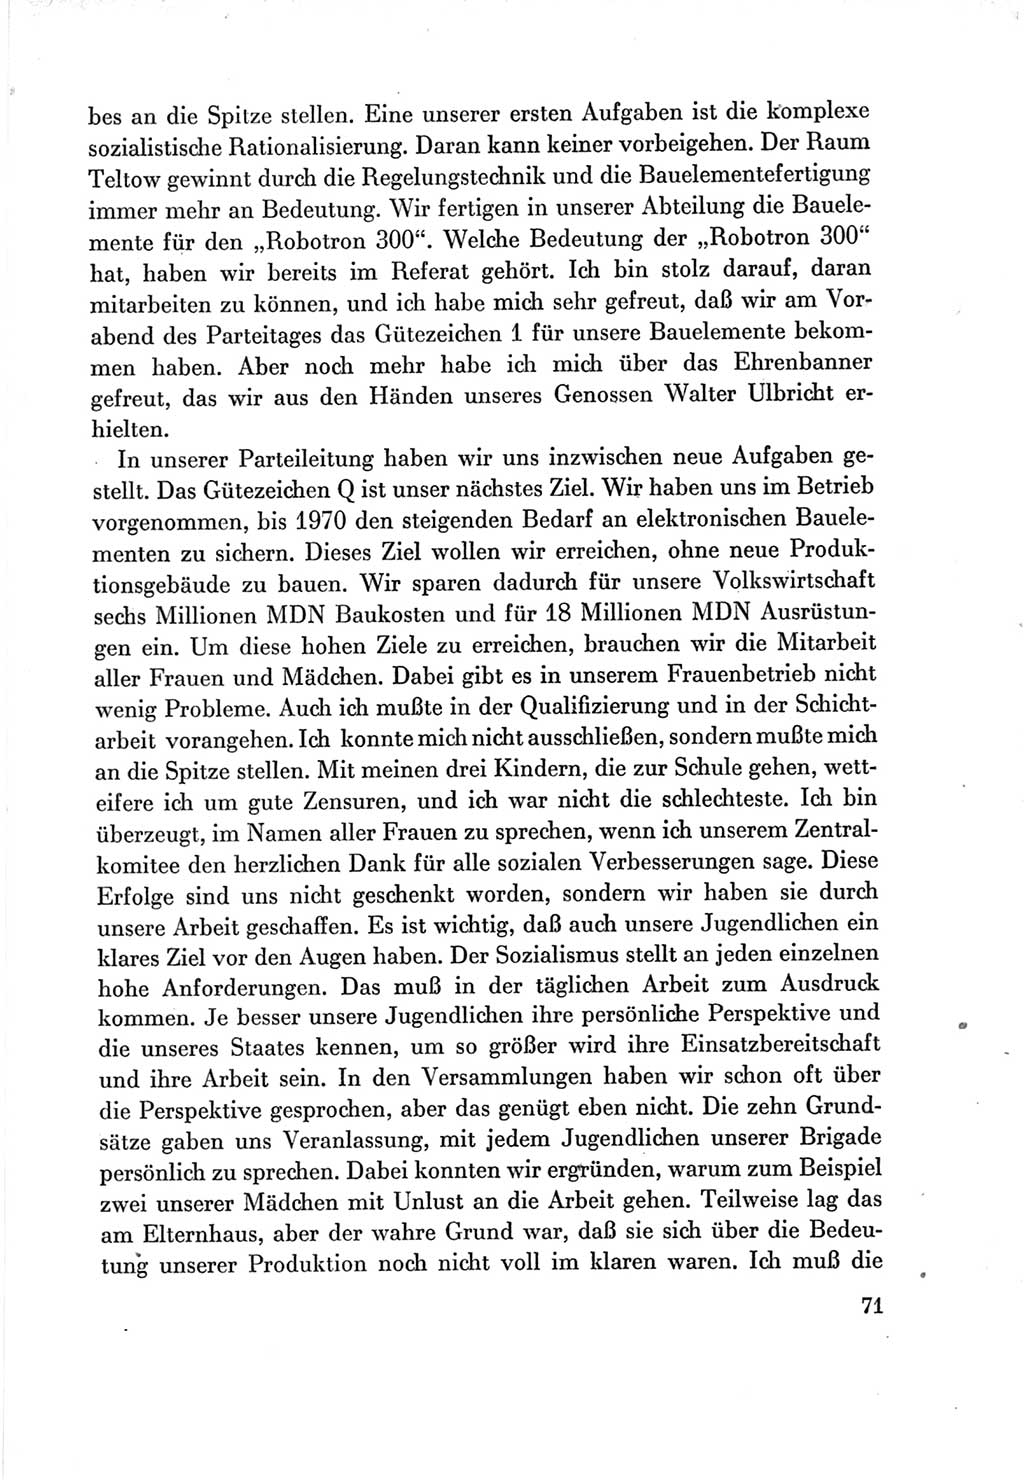 Protokoll der Verhandlungen des Ⅶ. Parteitages der Sozialistischen Einheitspartei Deutschlands (SED) [Deutsche Demokratische Republik (DDR)] 1967, Band Ⅲ, Seite 71 (Prot. Verh. Ⅶ. PT SED DDR 1967, Bd. Ⅲ, S. 71)